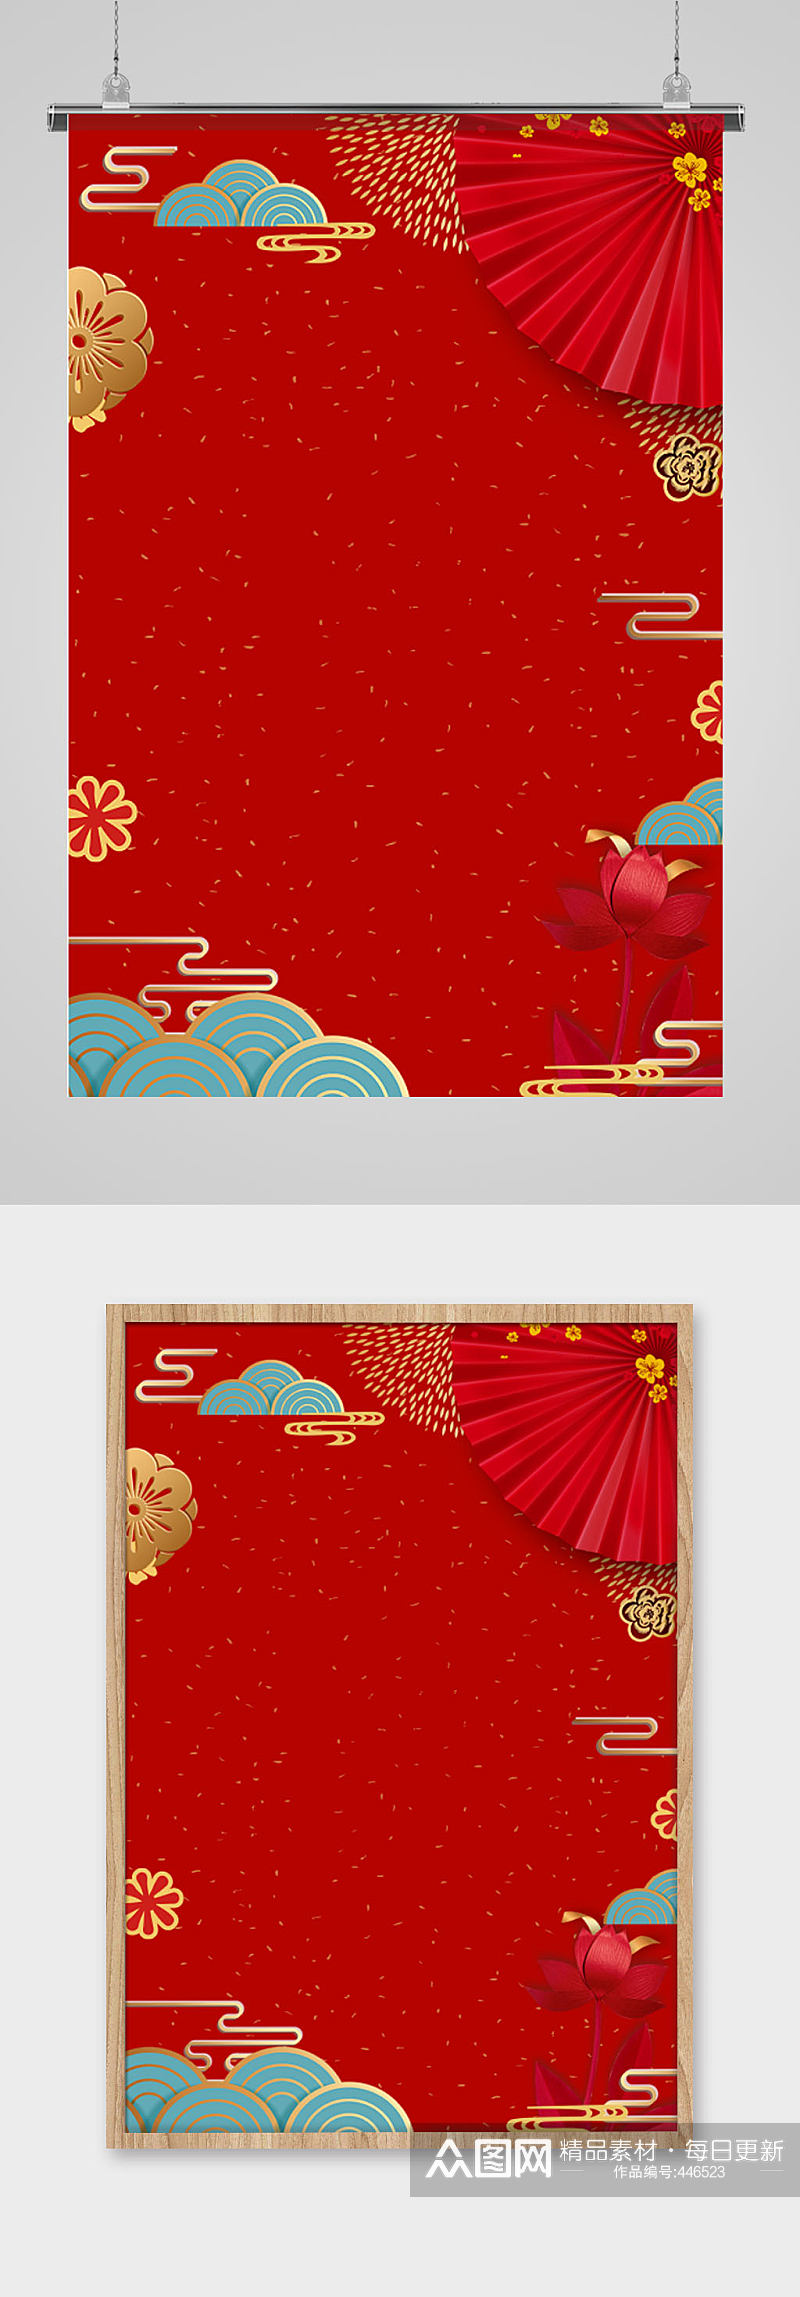 A4红色新年春节背景图片素材